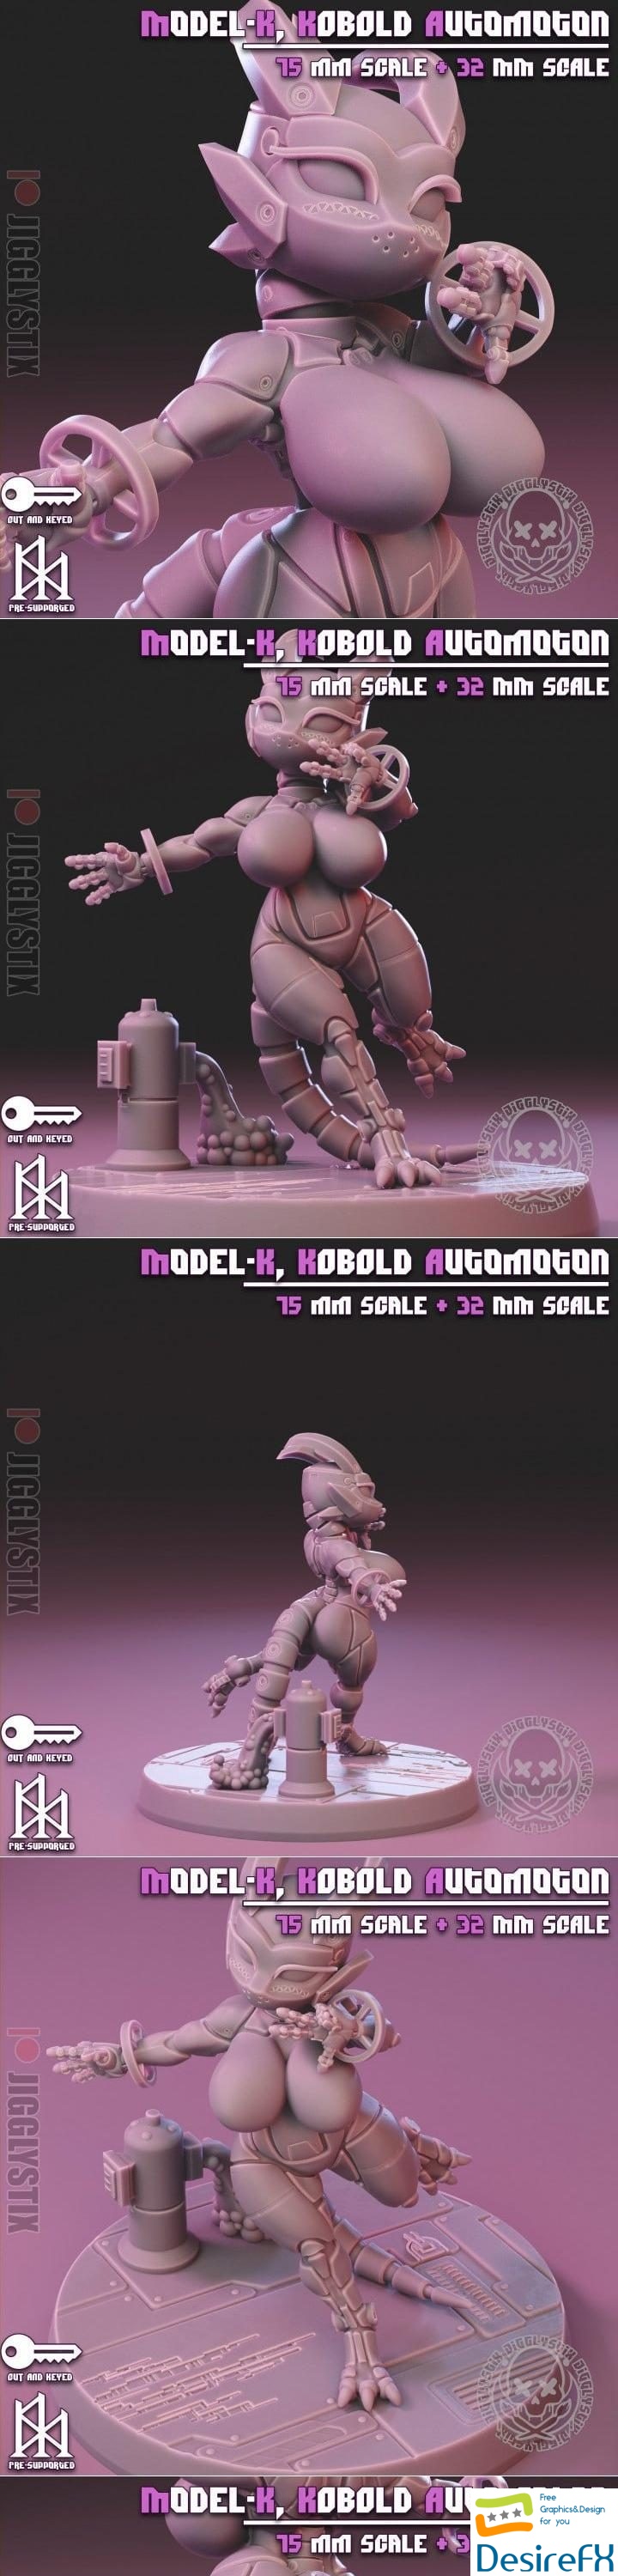 Jigglystix - Kobold Automoton 3D Print